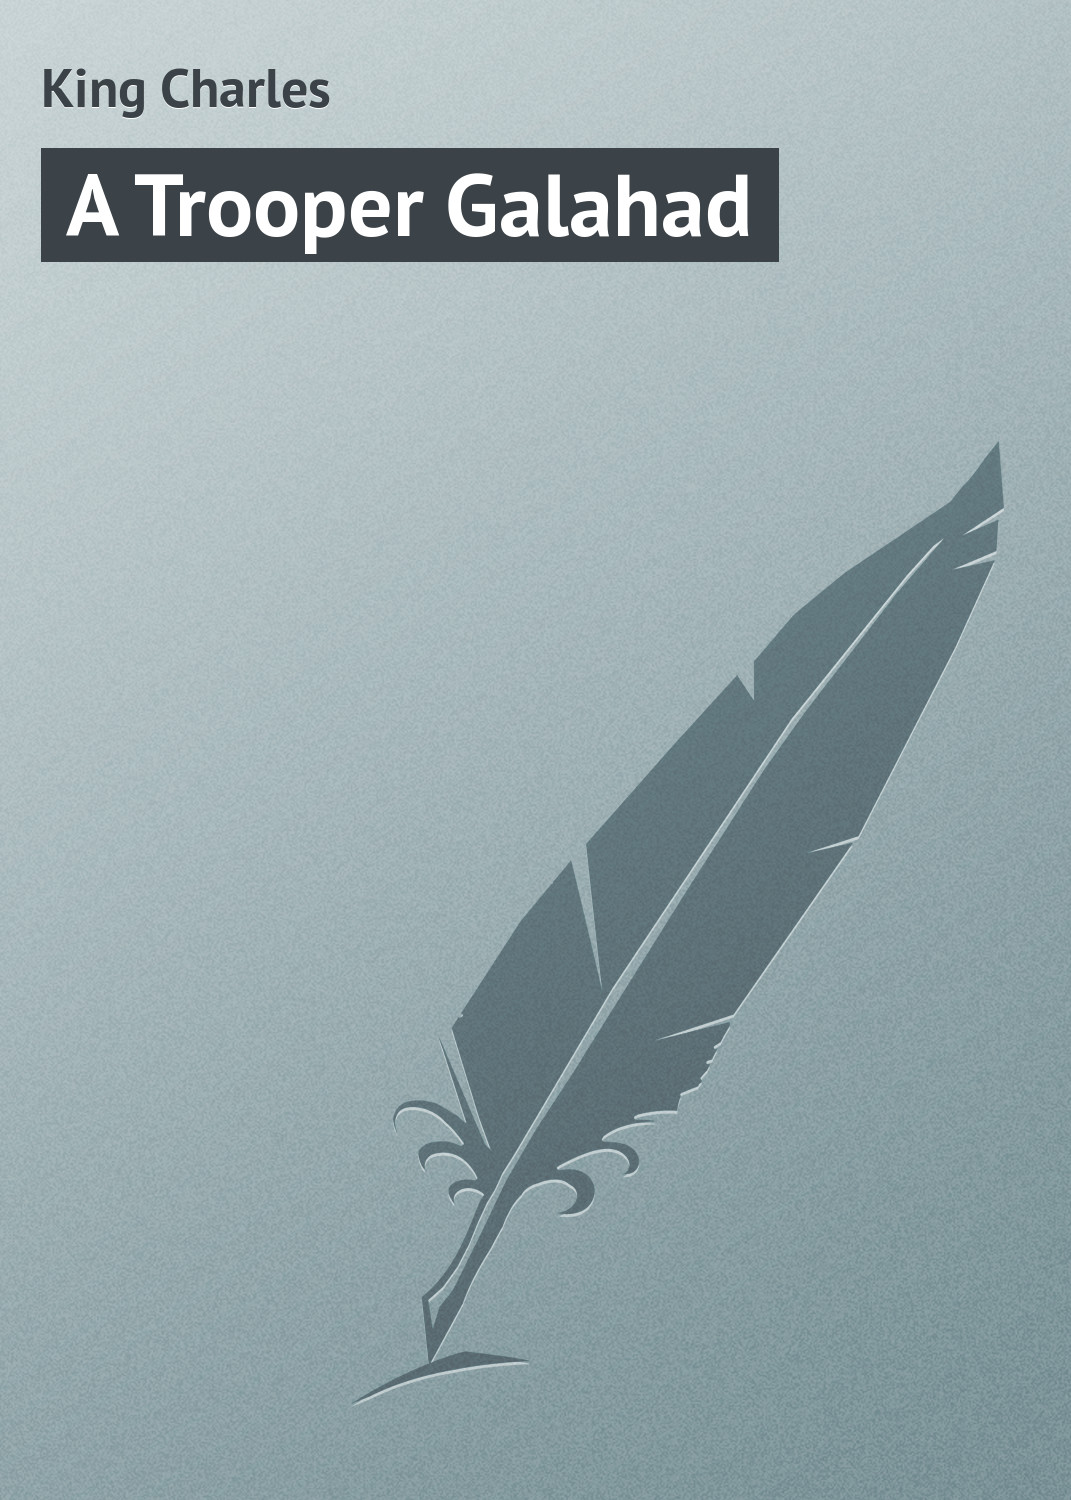 Книга A Trooper Galahad из серии , созданная Charles King, может относится к жанру Зарубежная классика, Зарубежные приключения. Стоимость электронной книги A Trooper Galahad с идентификатором 23164467 составляет 5.99 руб.